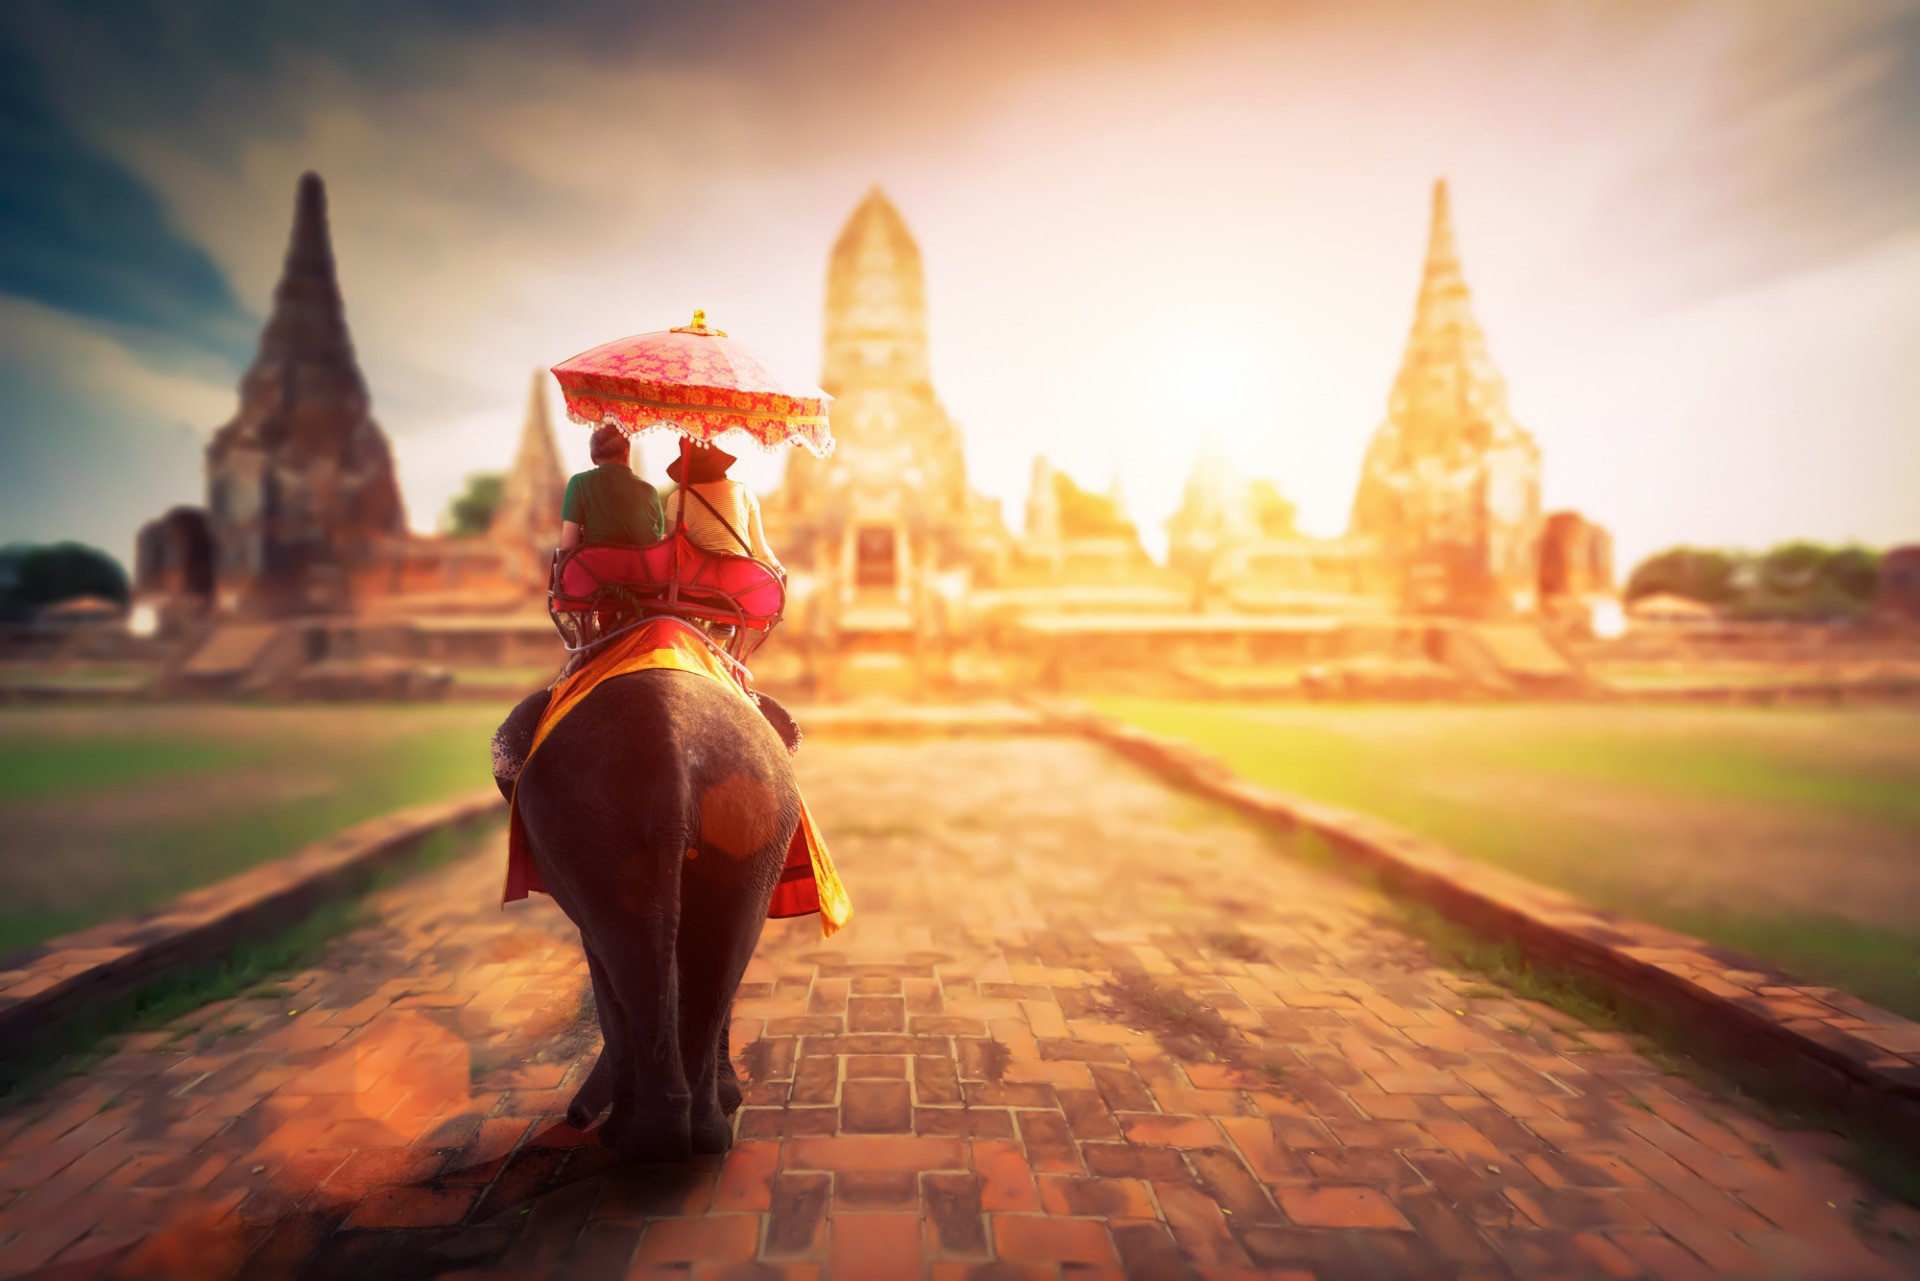 タイ古式の技術を天王寺で使い適切な施術について記事を発信